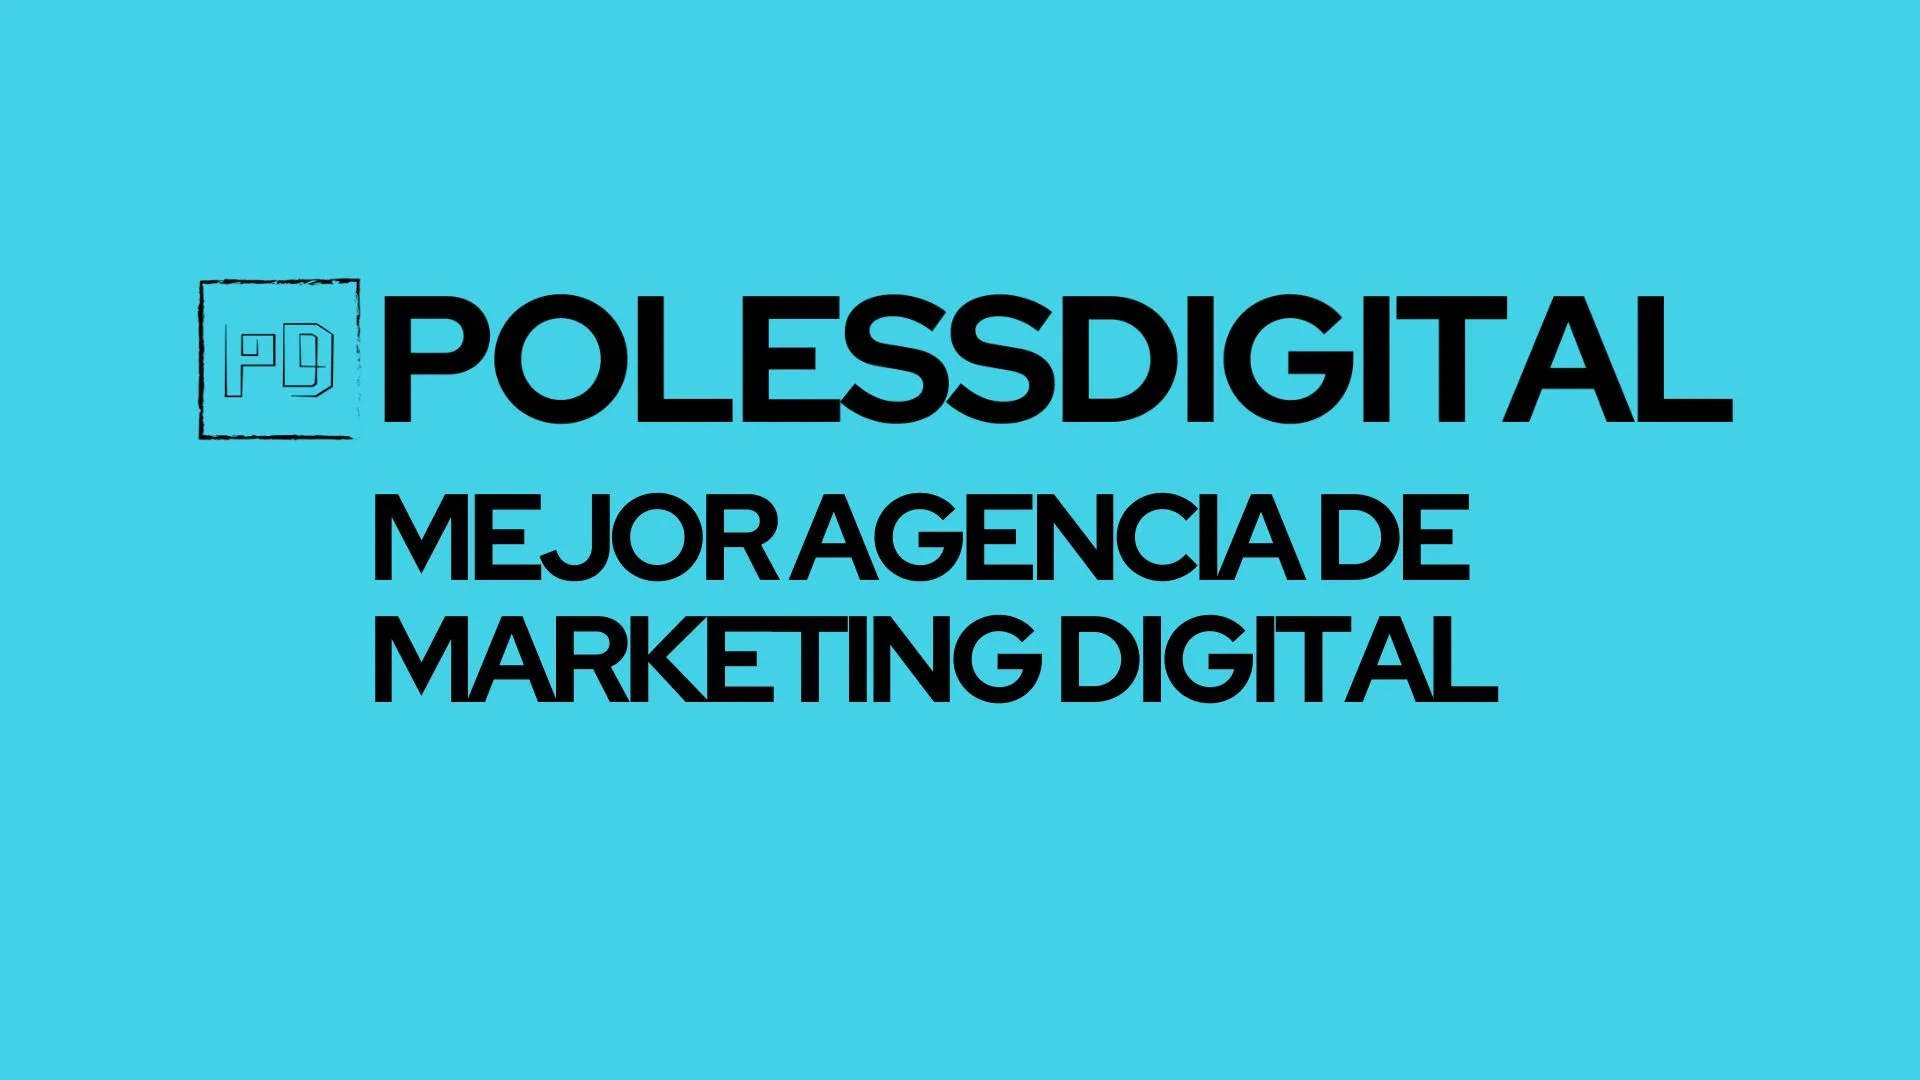 Mejor agencia de marketing digital polessdigital